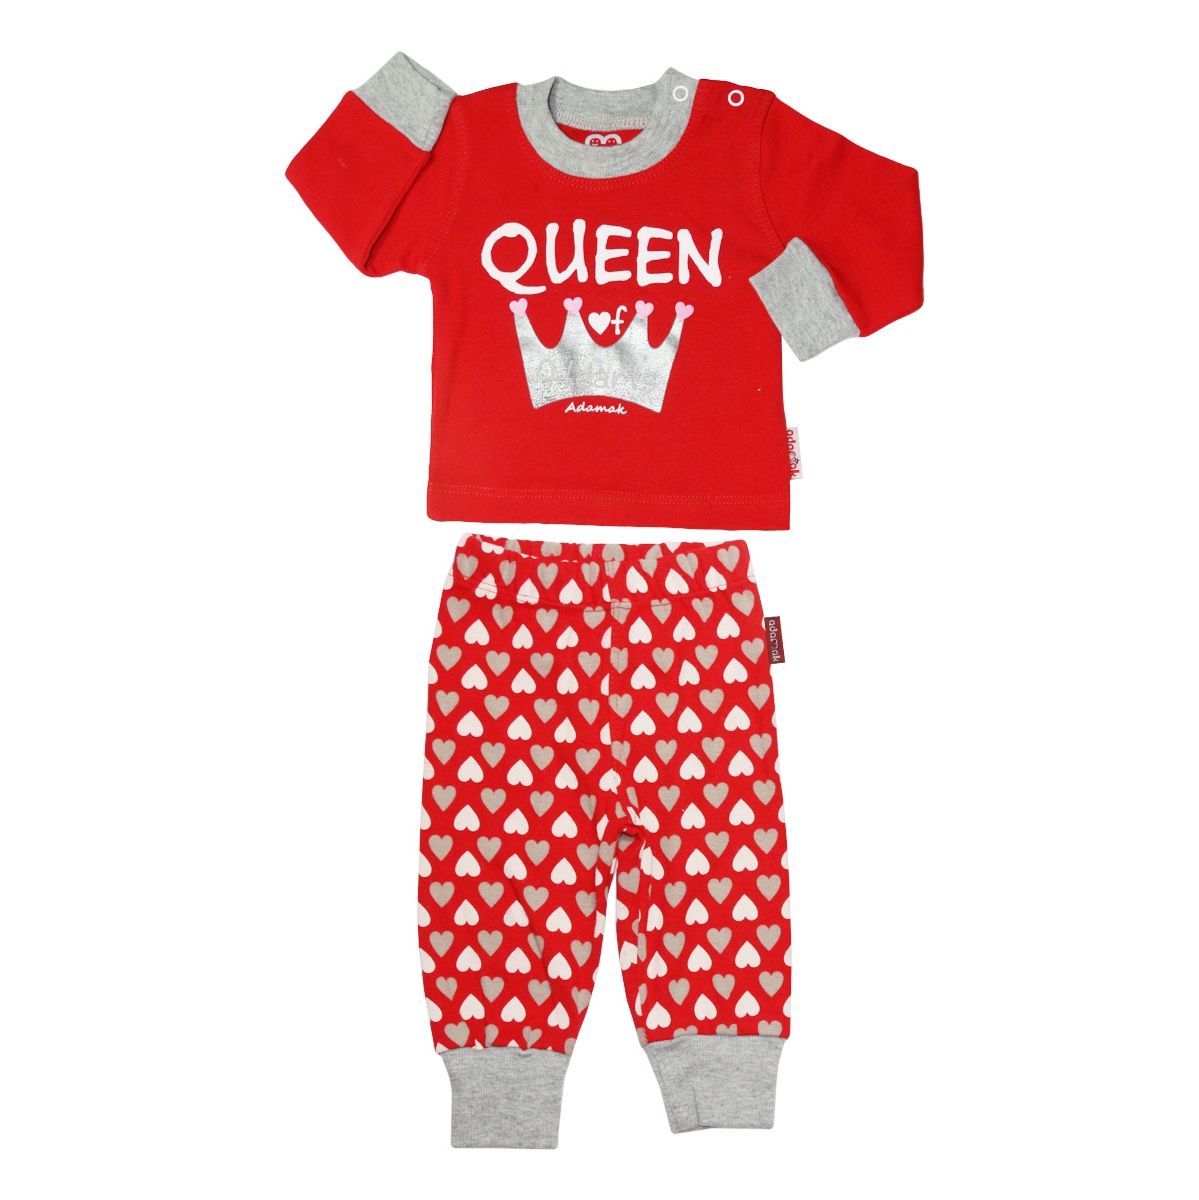 ست تی شرت و شلوار دخترانه آدمک مدل Queen رنگ قرمز -  - 1